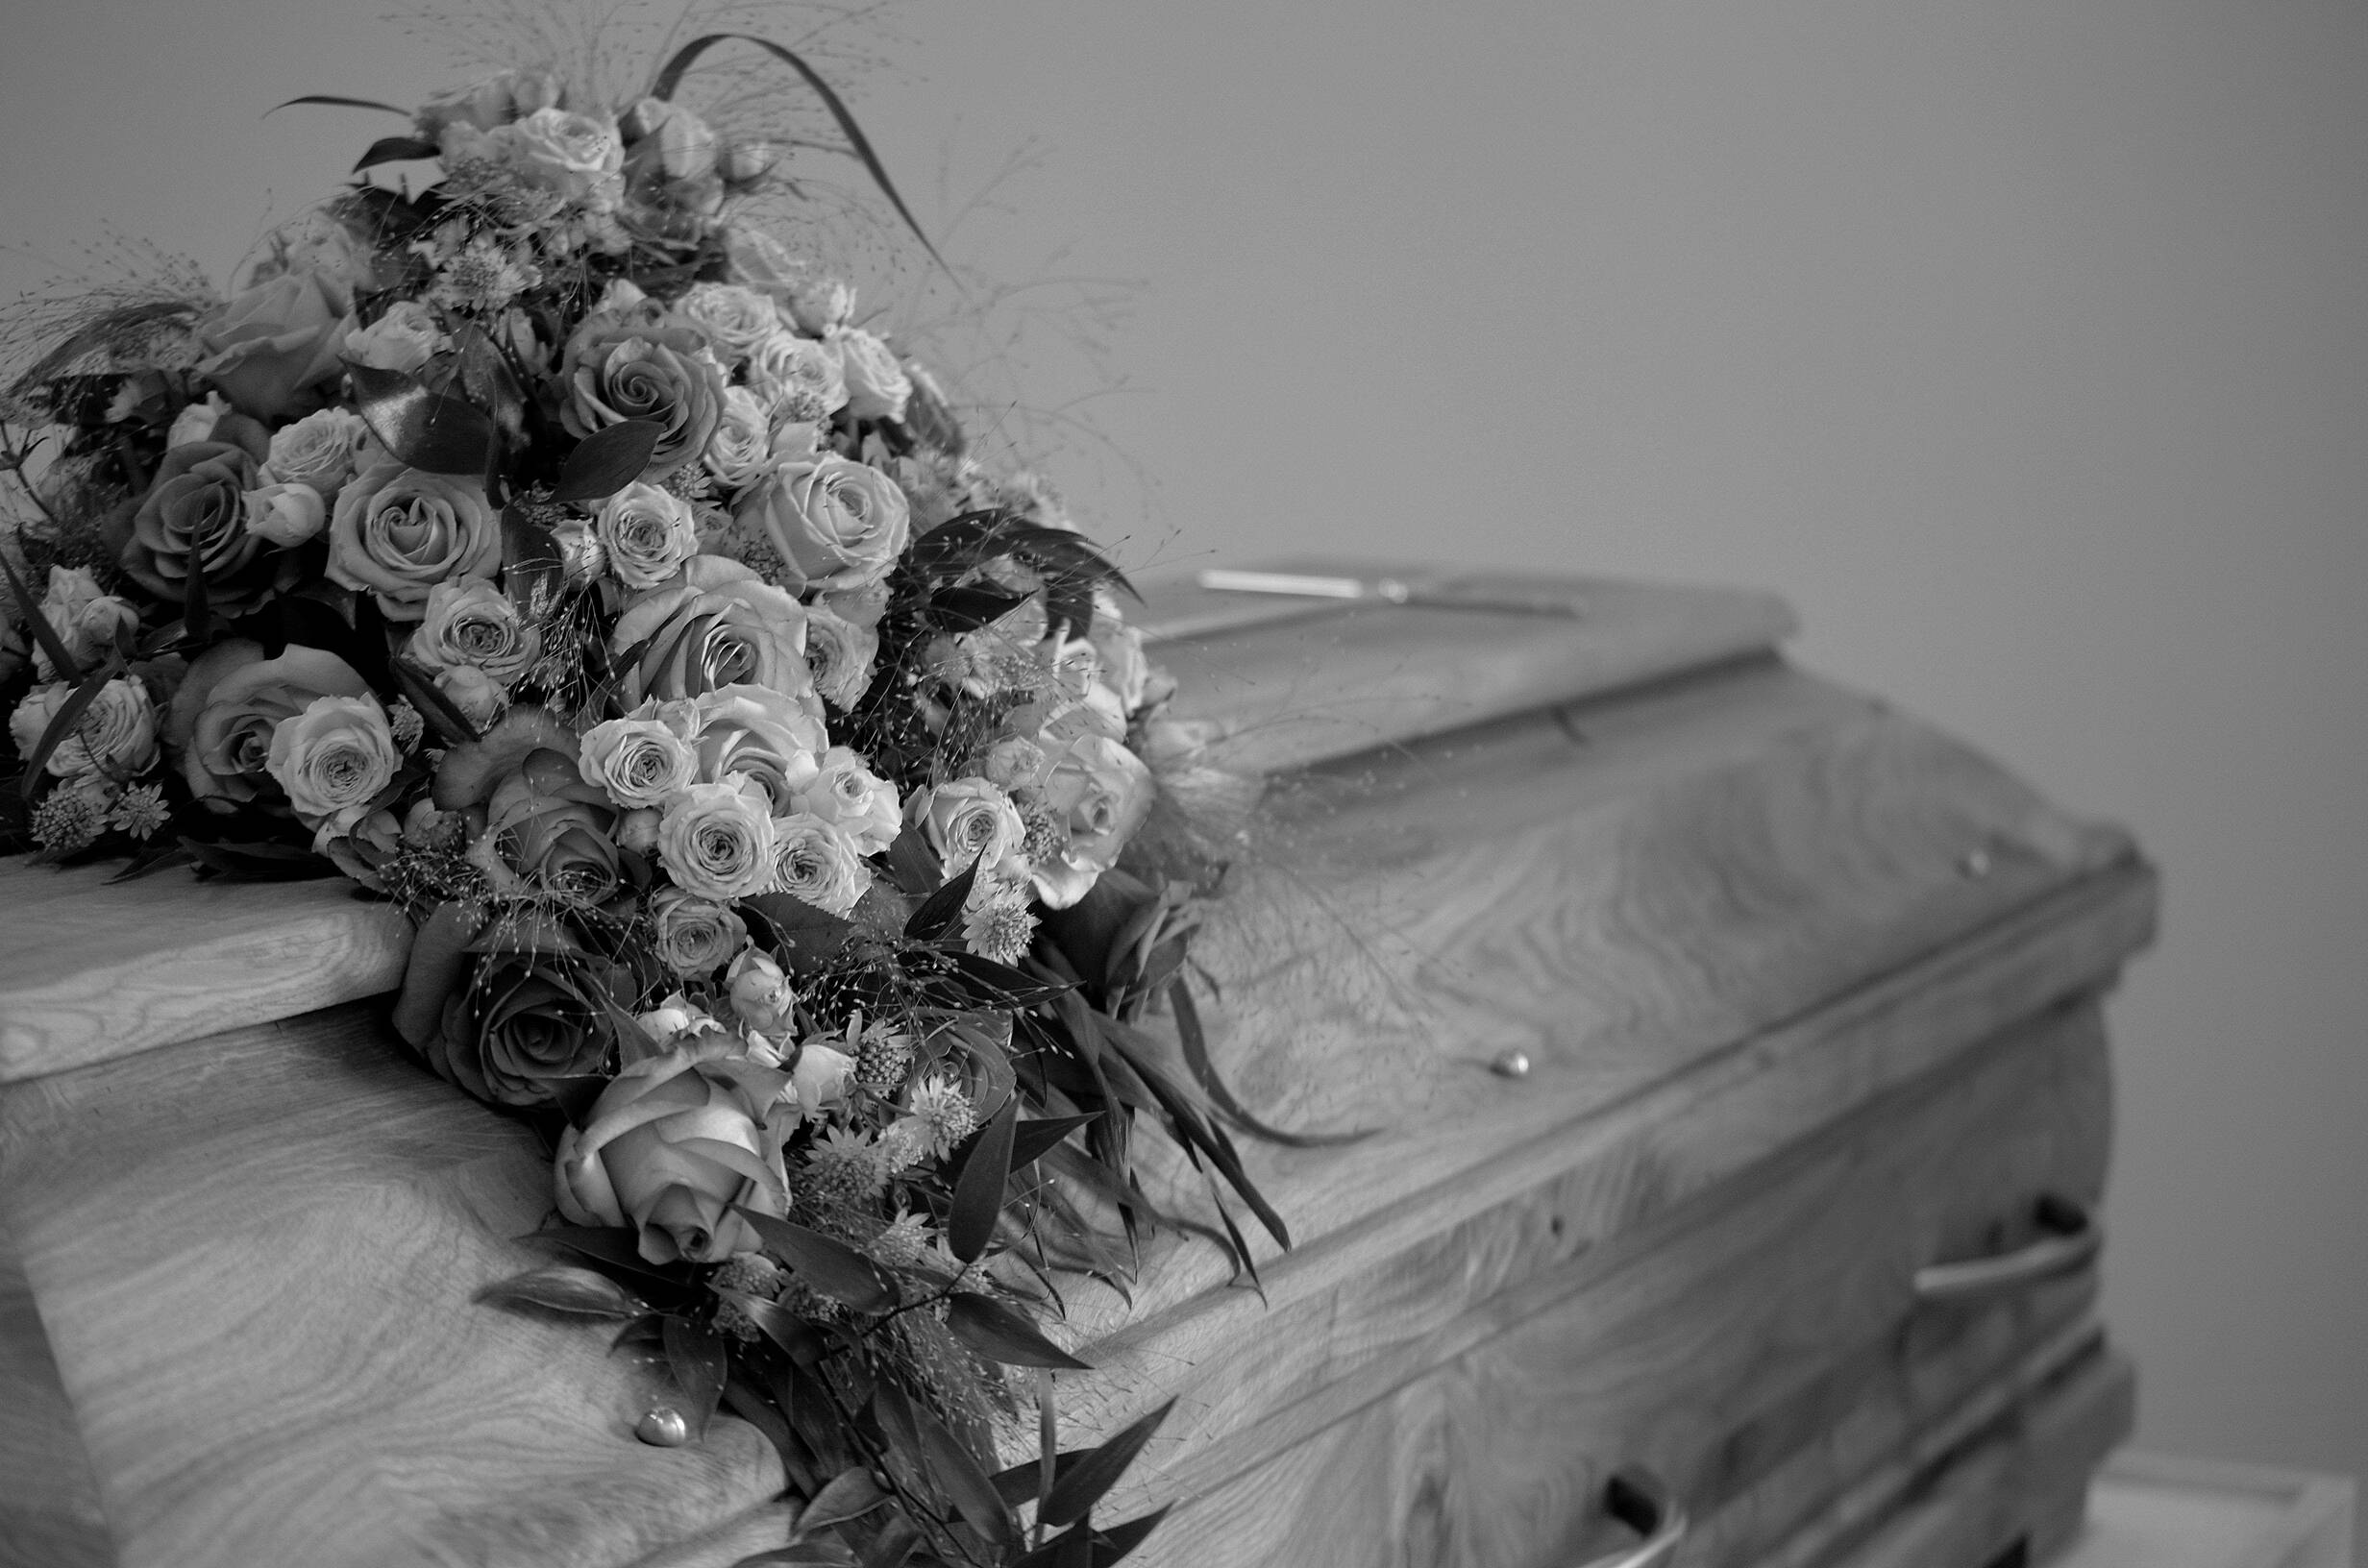 Burial Flower Arrangements